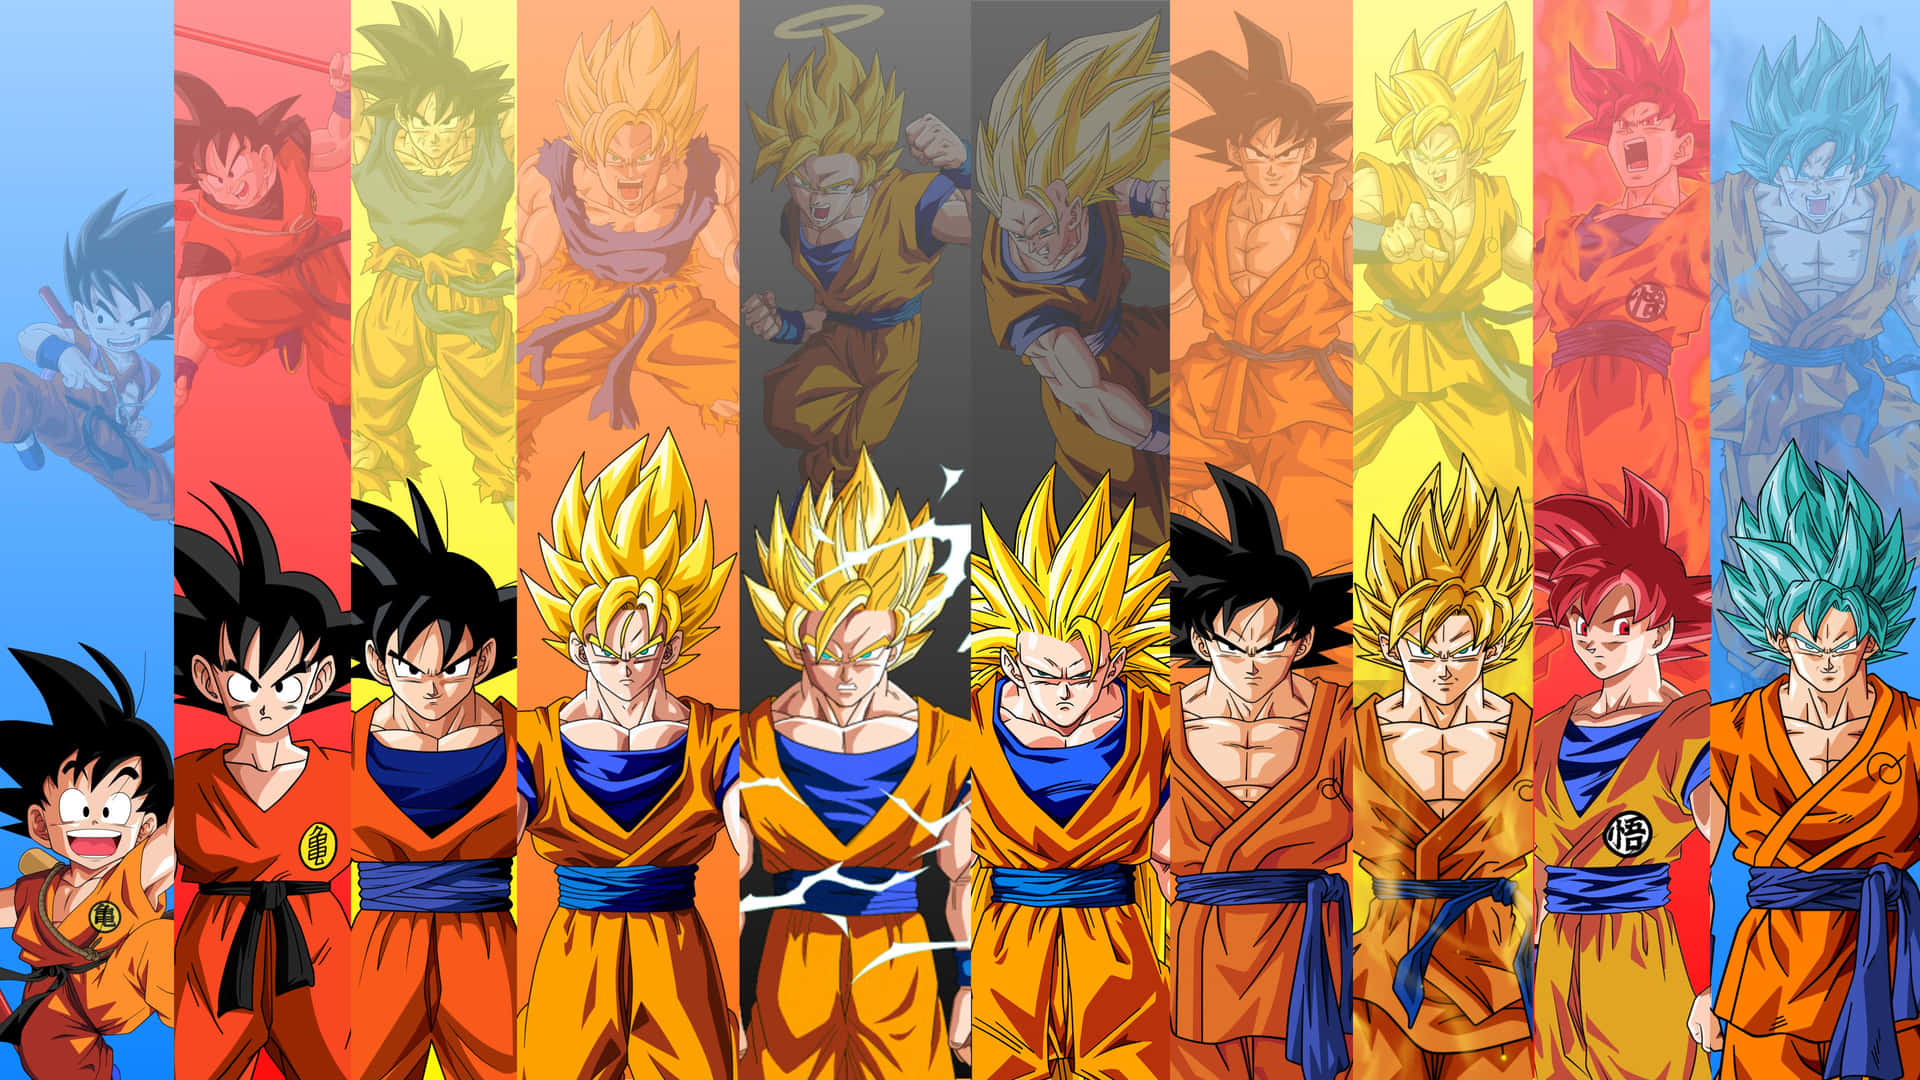 Imagende La Evolución De Goku En Dragon Ball Z